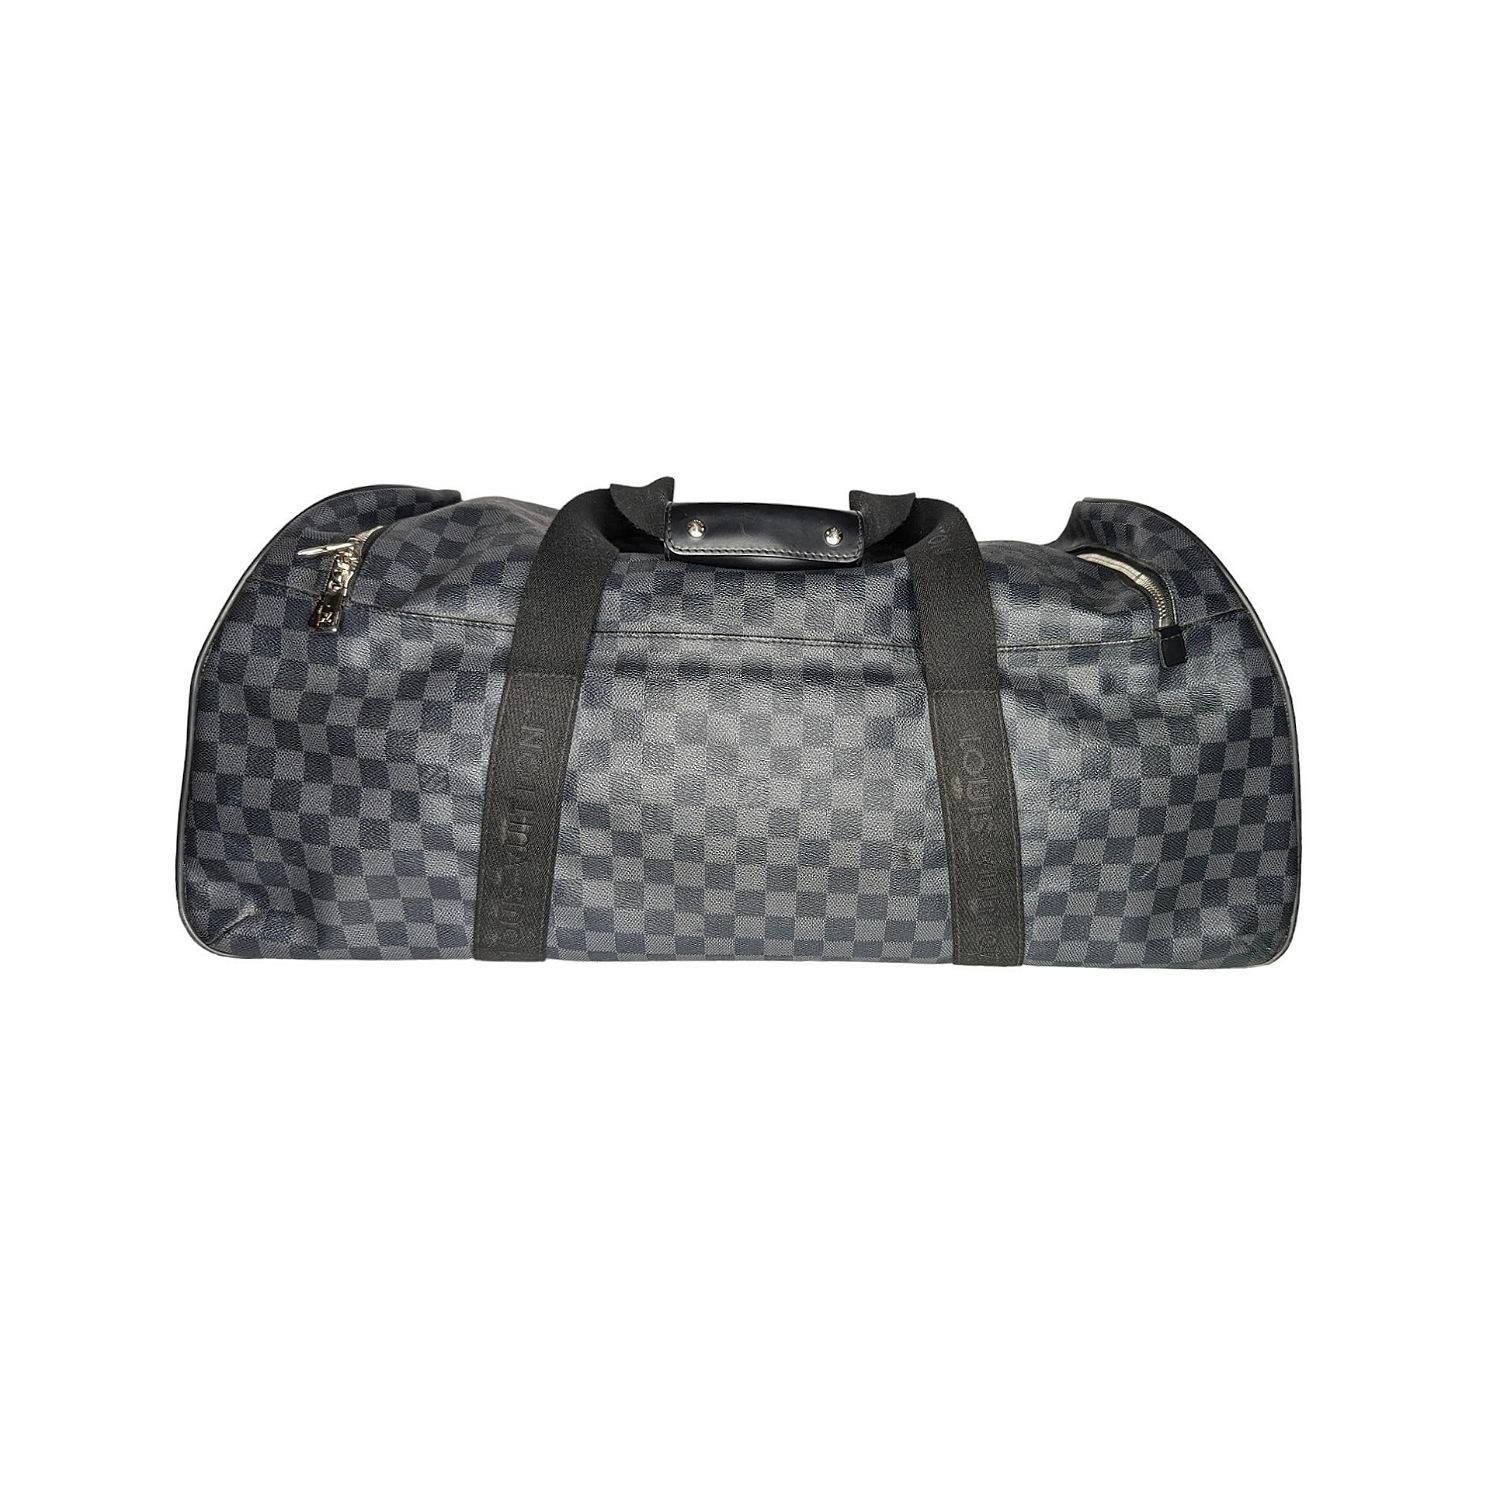 Die Louis Vuitton Damier Graphite Canvas Neo Eole 65 Rolling Duffle Bag wurde nach dem griechischen Gott benannt und ist die ideale Wochenendtasche. Mit geräumigem Innenraum, rutschfesten Rädern auf einer Seite, zwei Tragegriffen aus Segeltuch und